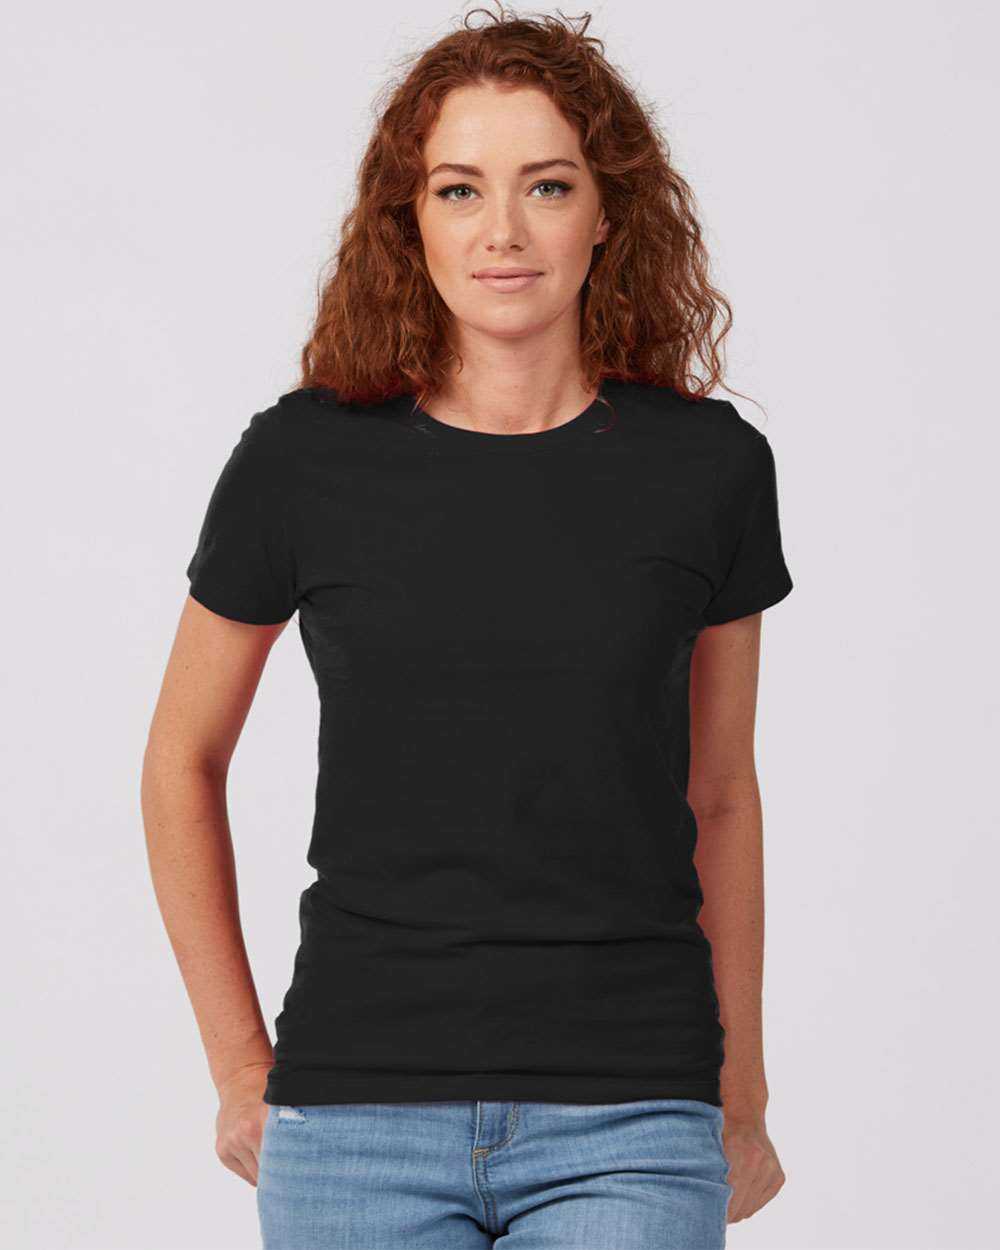 Tultex 516 Women&#39;s Premium Cotton T-Shirt - Black - HIT a Double